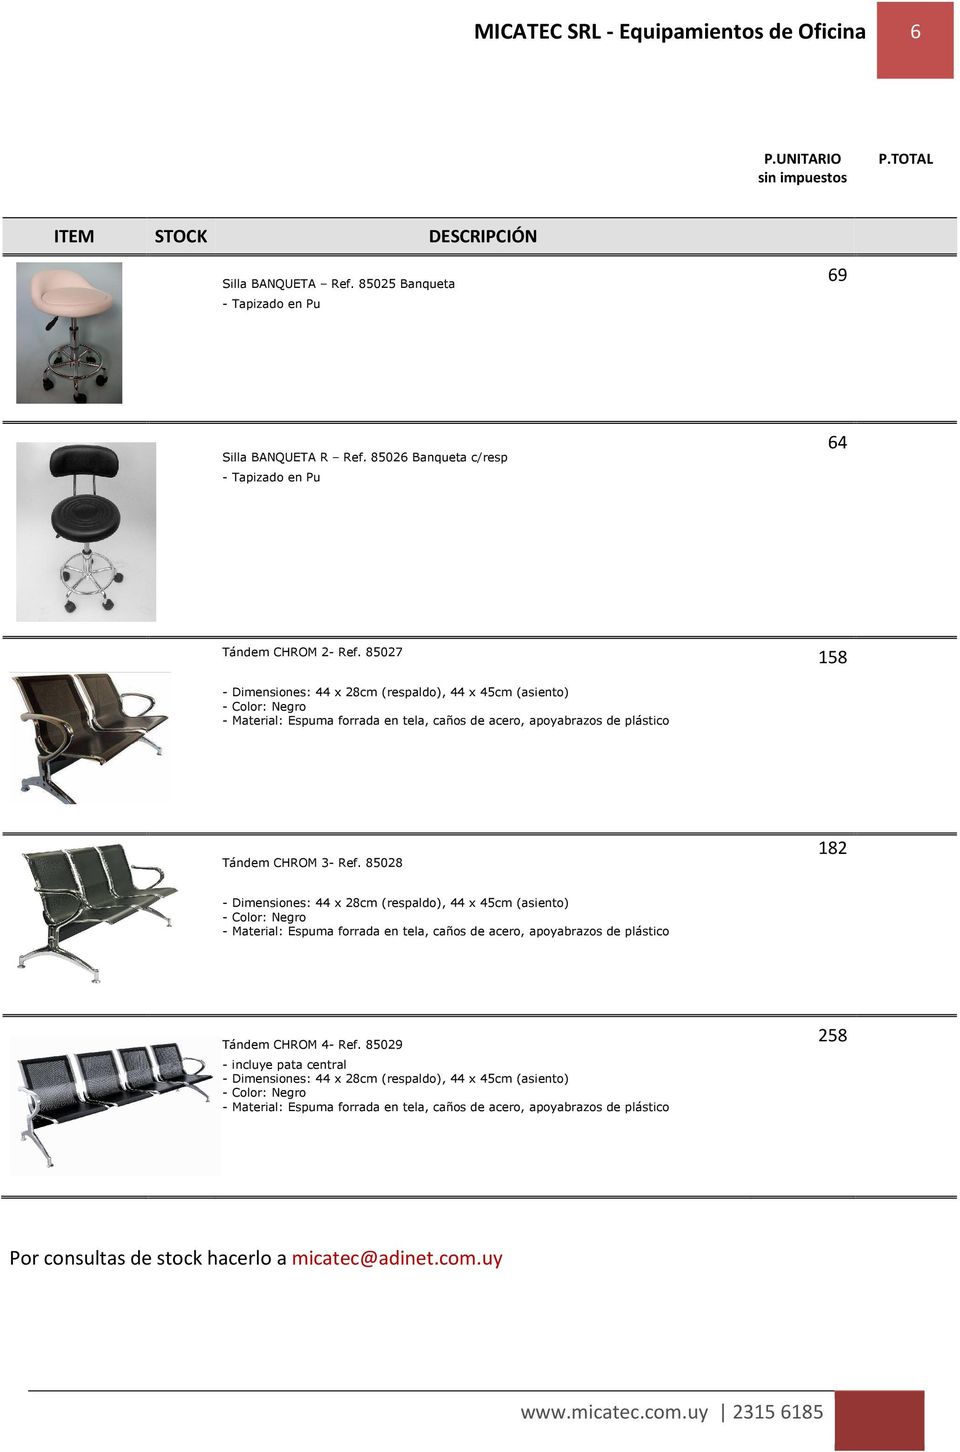 85028 182 - Dimensiones: 44 x 28cm (respaldo), 44 x 45cm (asiento) - Color: Negro - Material: Espuma forrada en tela, caños de acero, apoyabrazos de plástico Tándem CHROM 4- Ref.